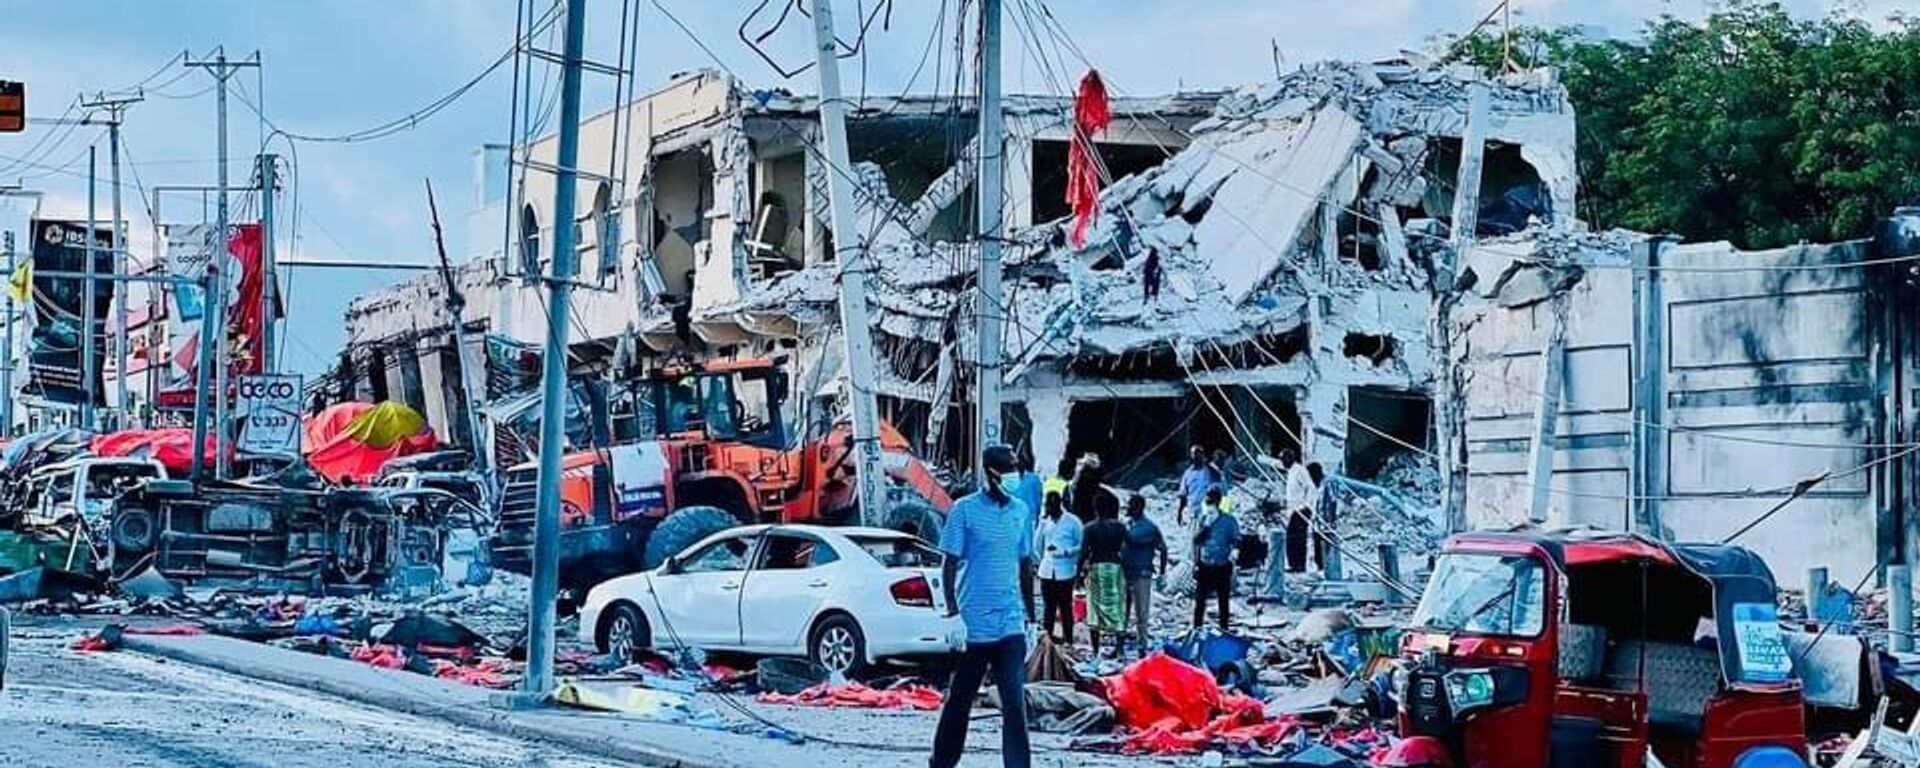 Escombros en la capital de Somalia tras el atentado terrorista cometido por Al-Shabaab - Sputnik Mundo, 1920, 30.10.2022